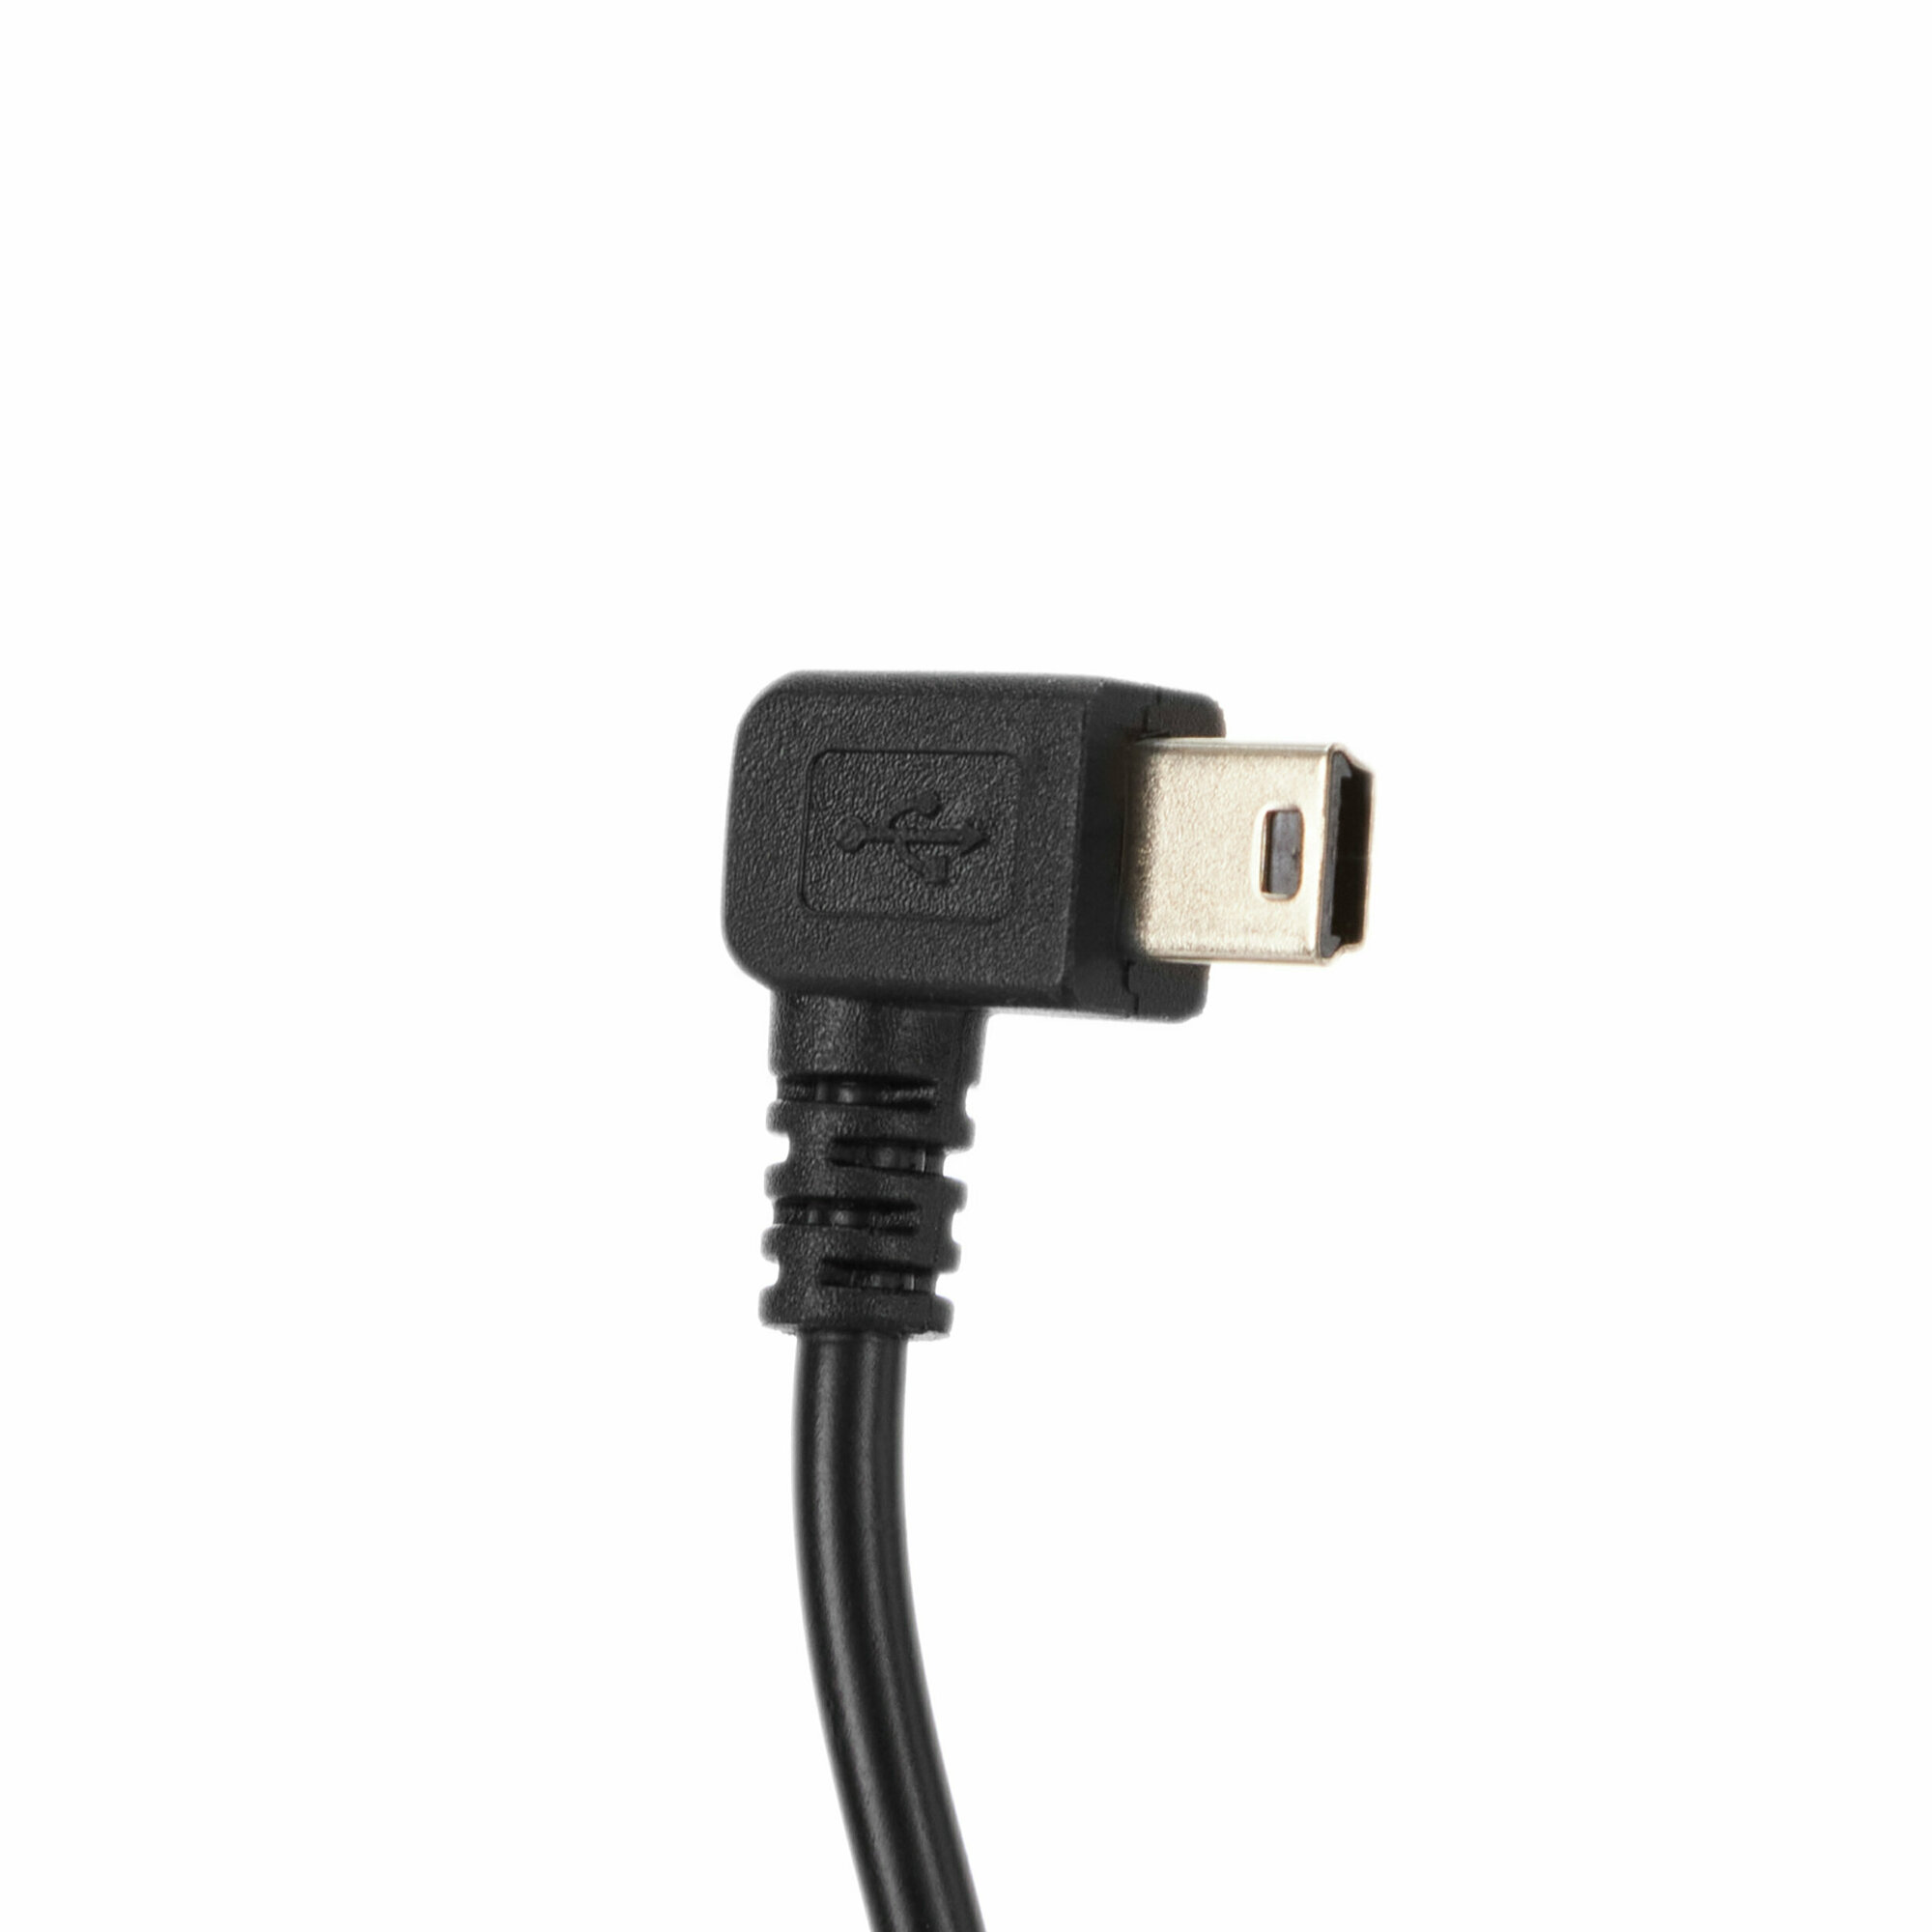 Провод для скрытой установки видеорегистратора mini USB 5V 31A (3 м)